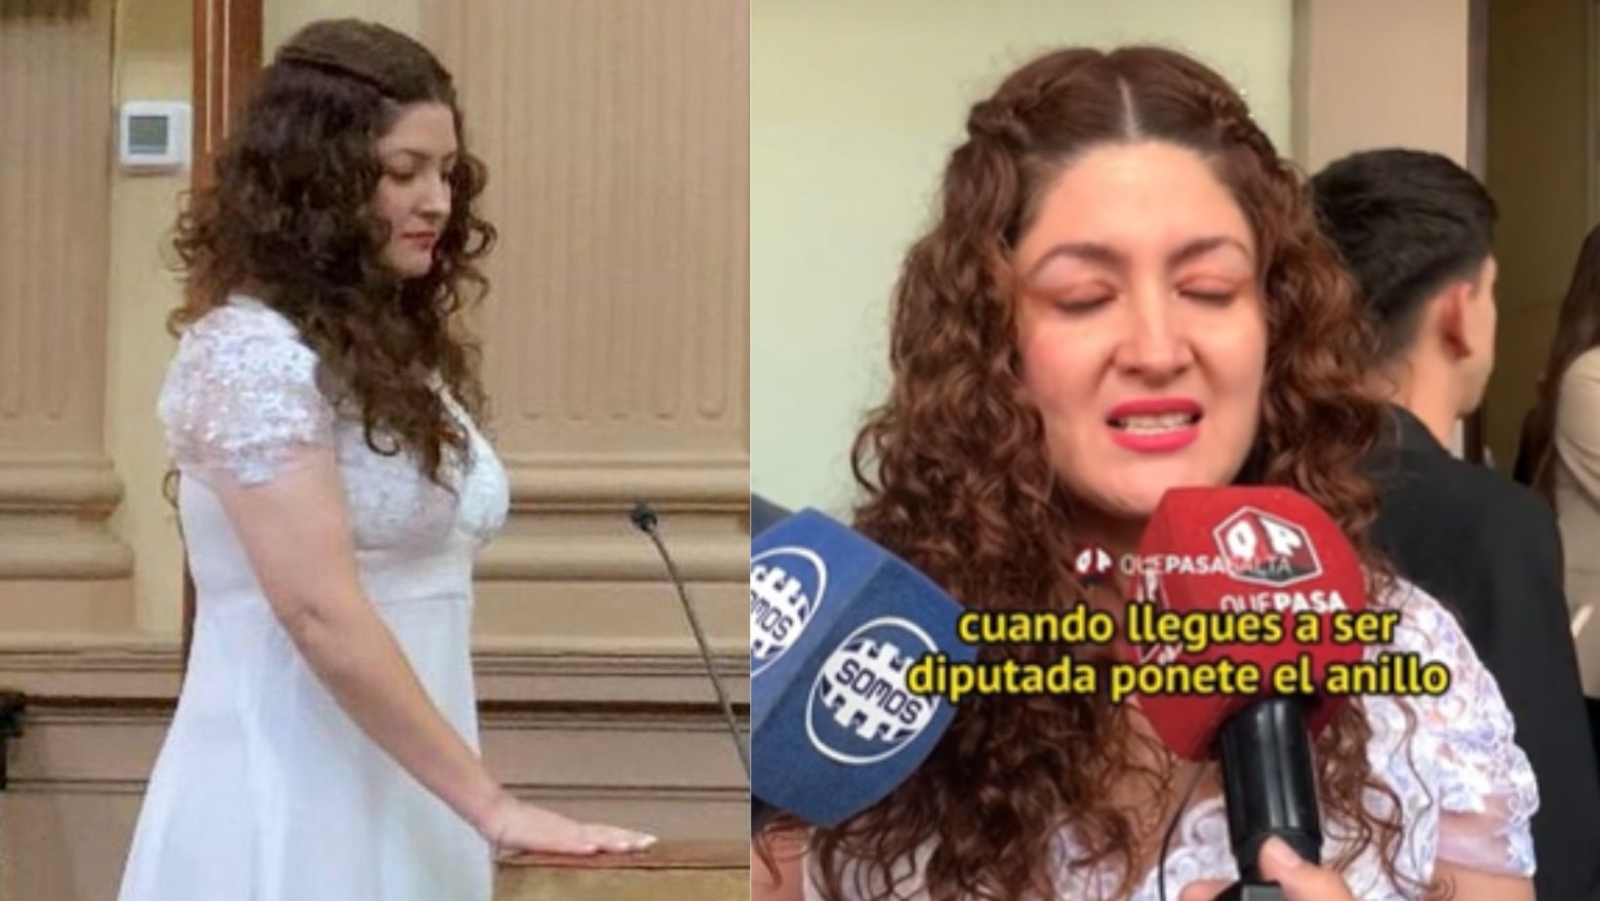 Diputada argentina asume su cargo vestida de novia y con anillo de compromiso